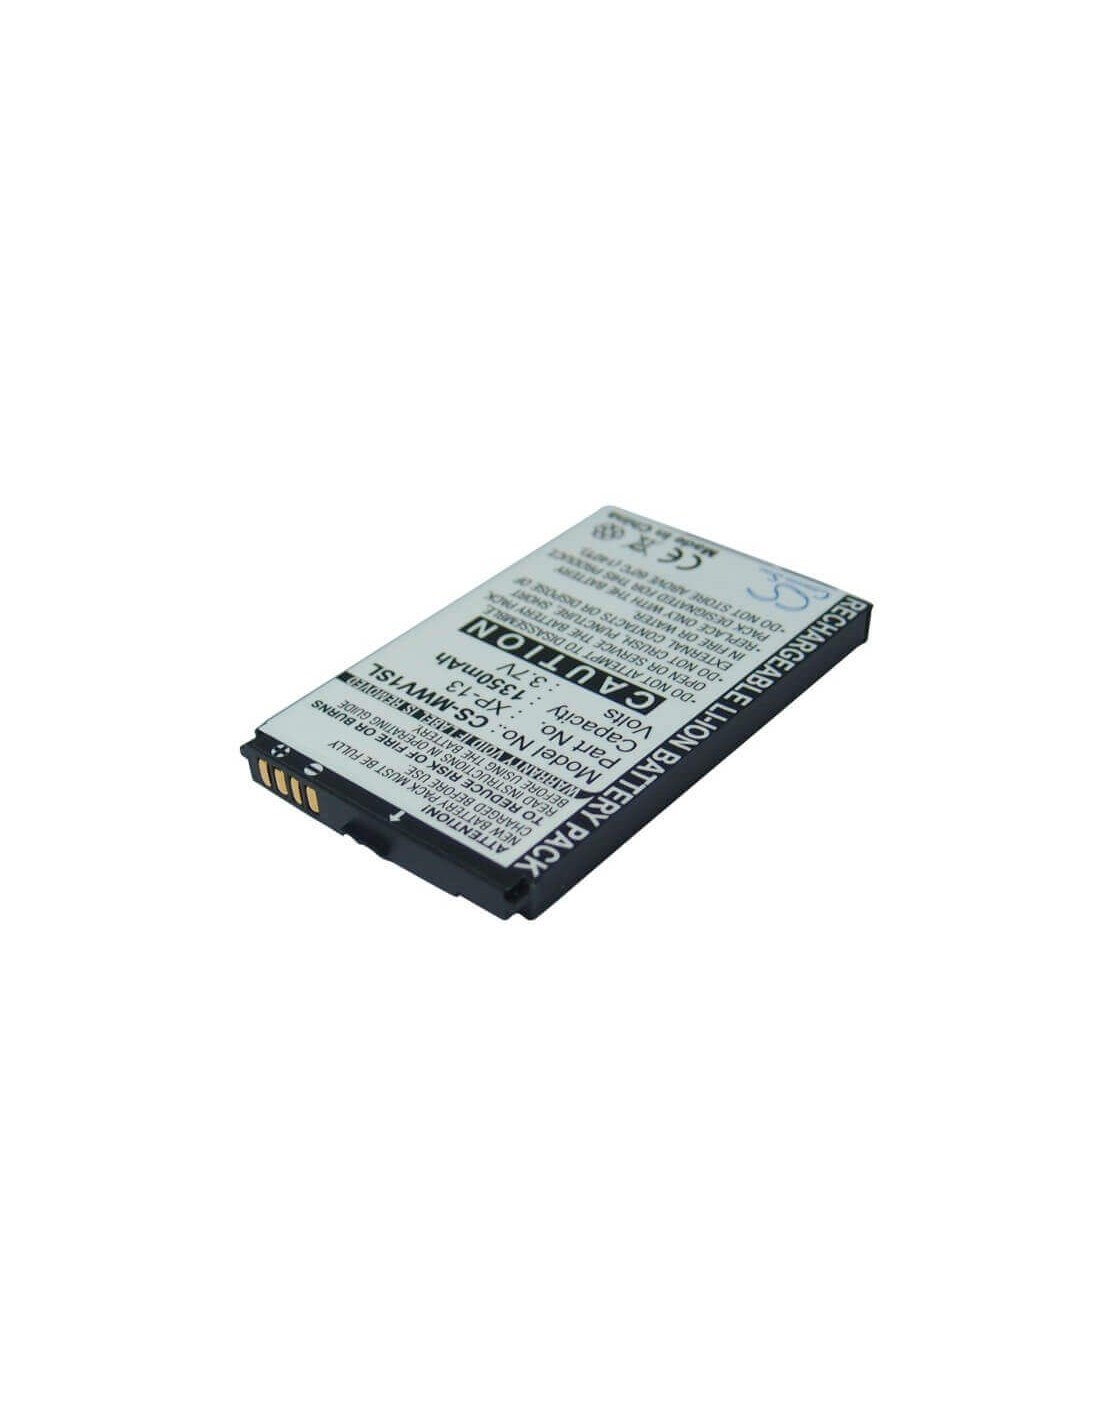 Battery for Gigabyte gSmart MS800, GSmart MS802, GSmart MS820 3.7V, 1350mAh - 5.00Wh